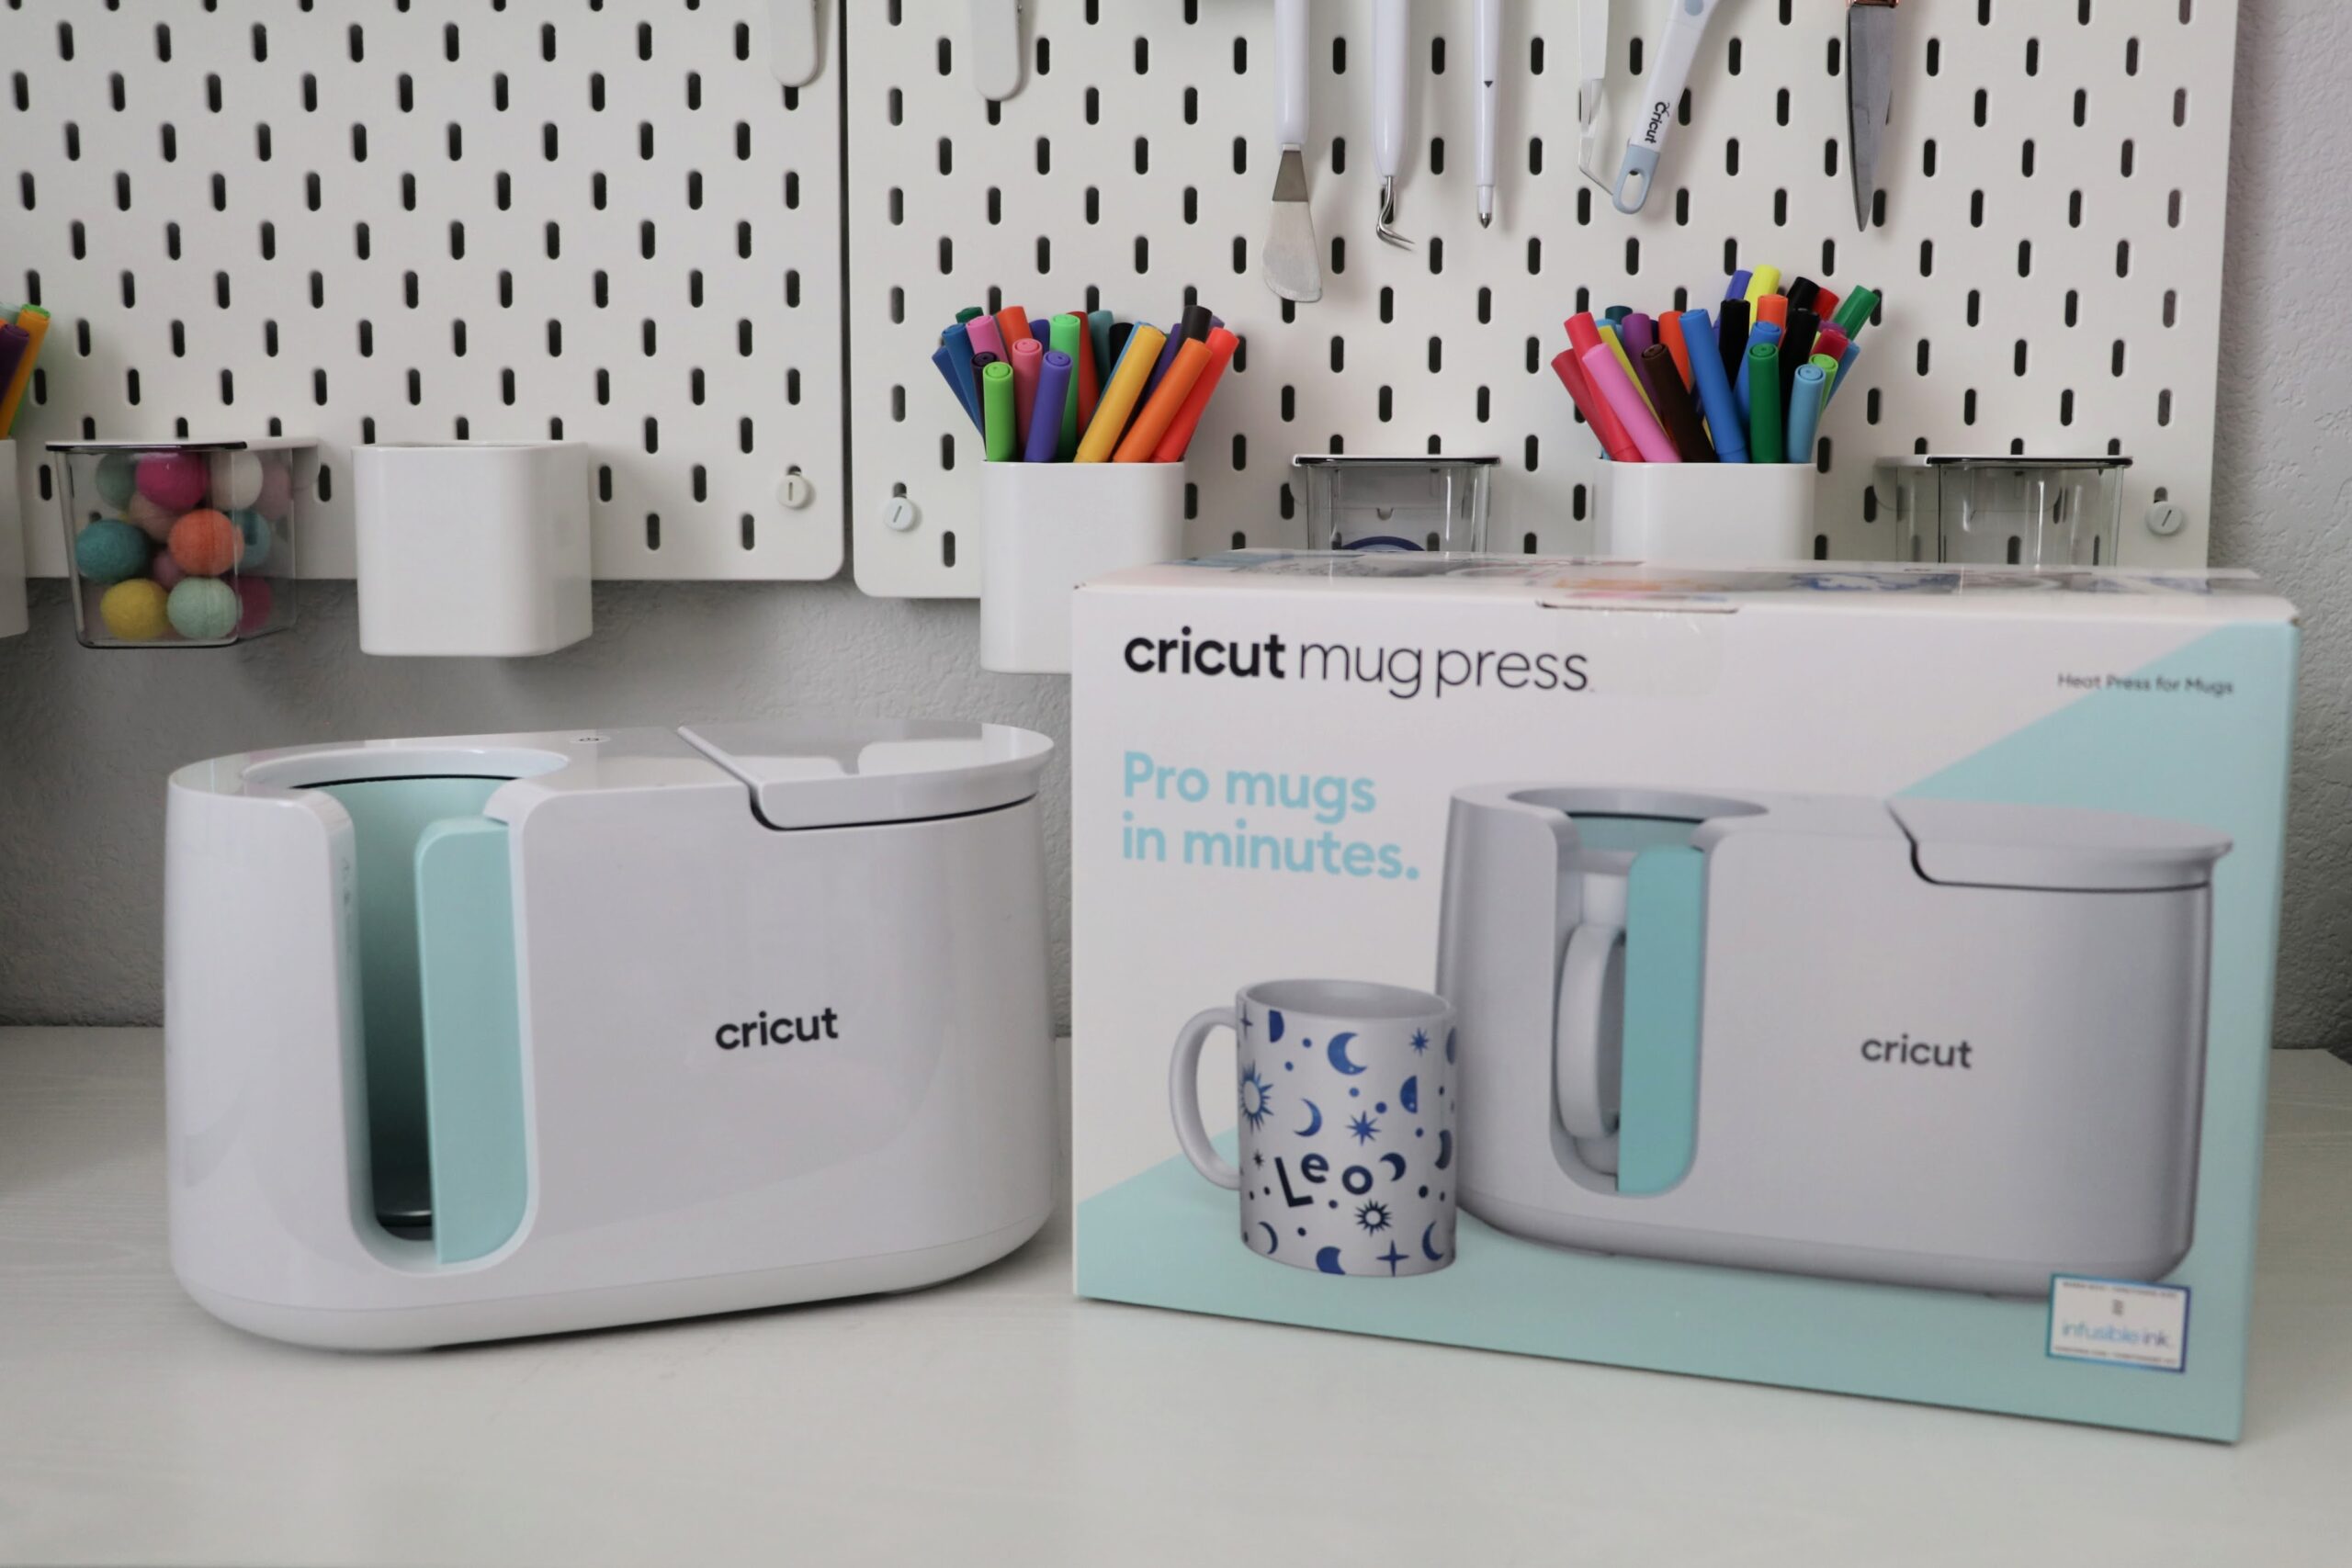 Review: The Cricut Mug Press Pros & Cons – PureWow